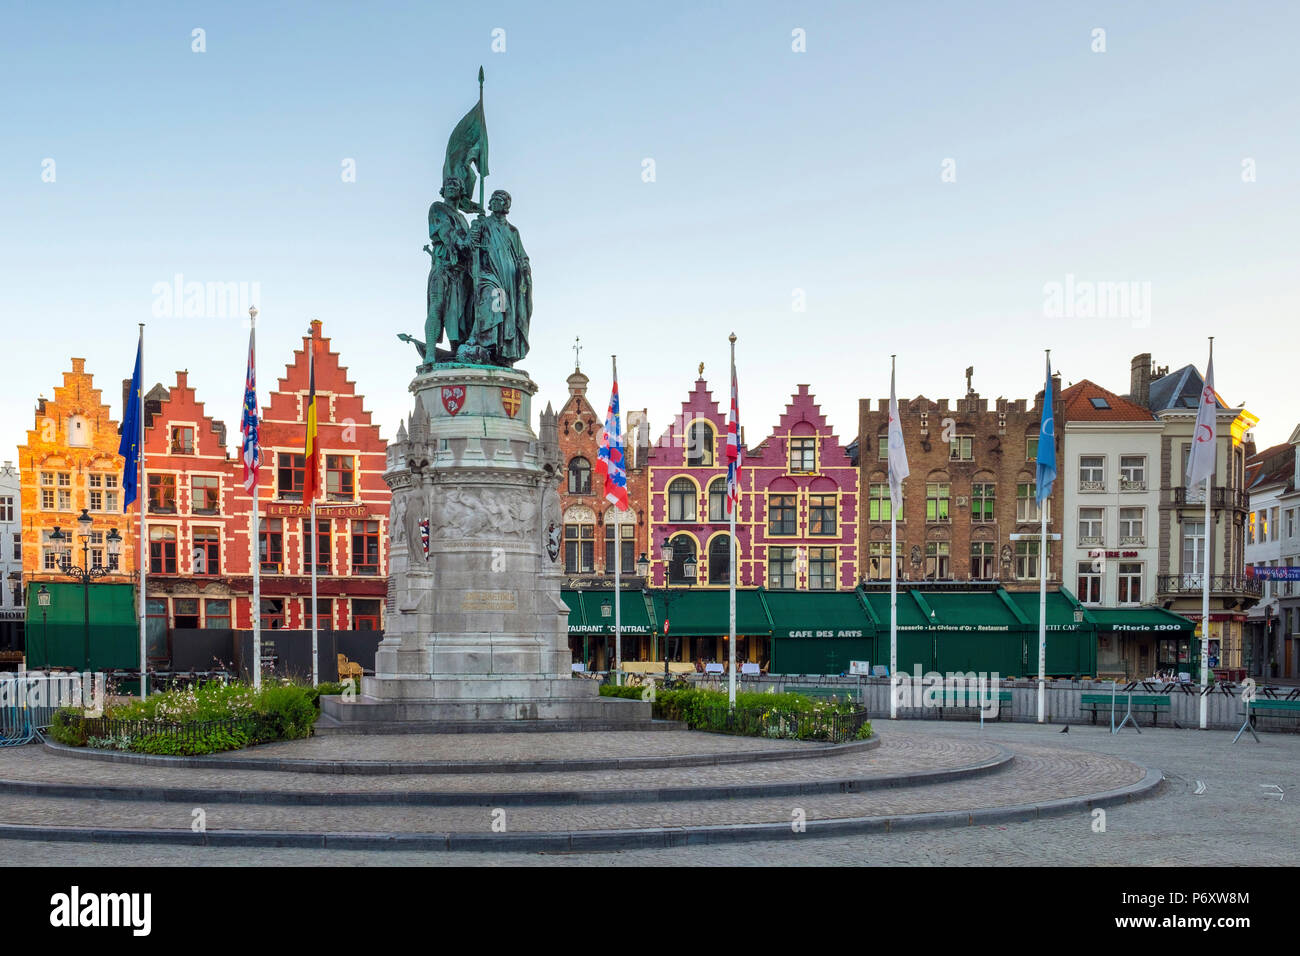 Belgium, West Flanders (Vlaanderen), Bruges (Brugge). Statue of Jan Breydel and Pieter de Coninck on Markt square. Stock Photo